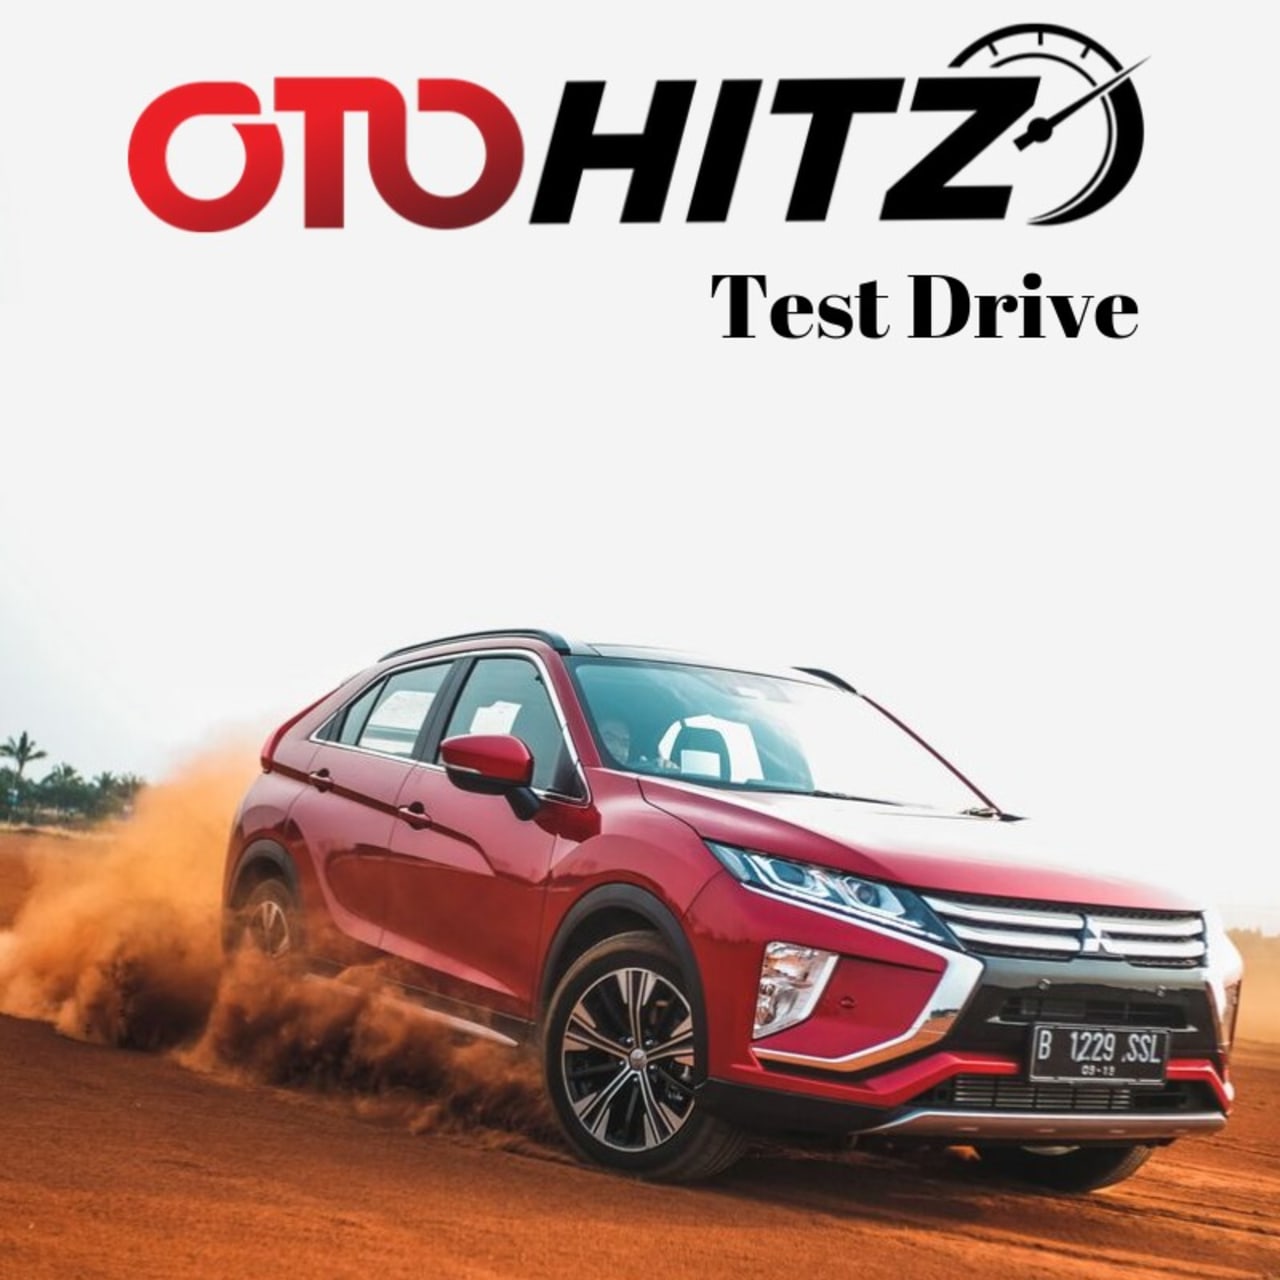 OTOHITZ-Test Drive